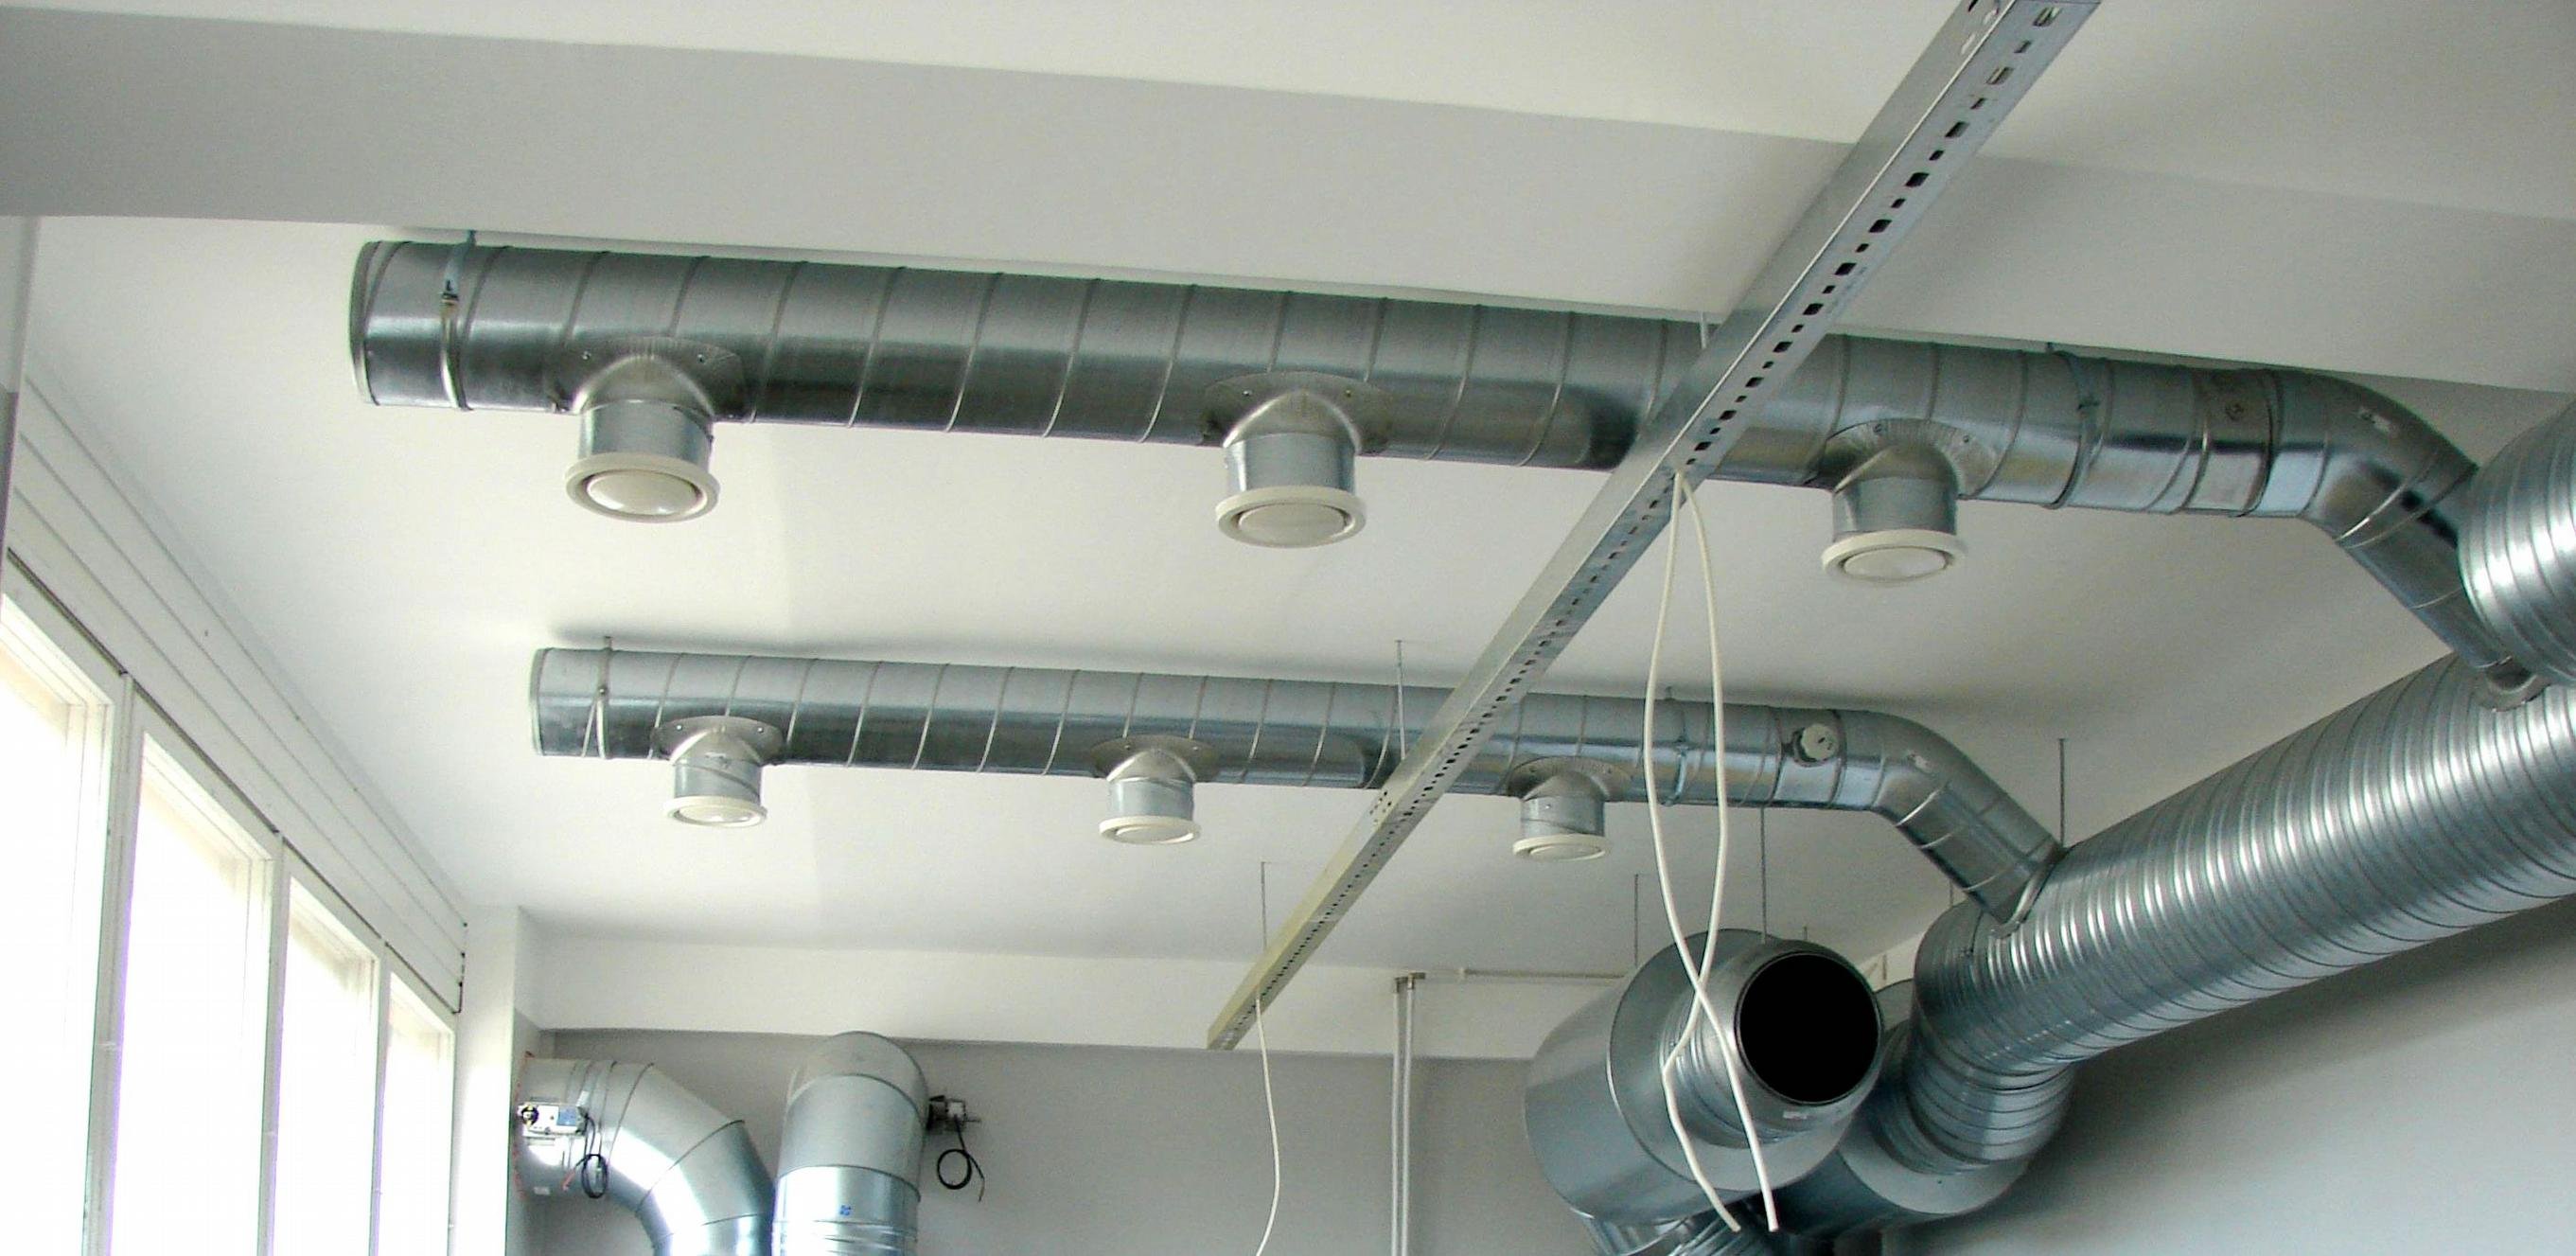 Как работают пластиковые воздуховоды в системах вентиляции?